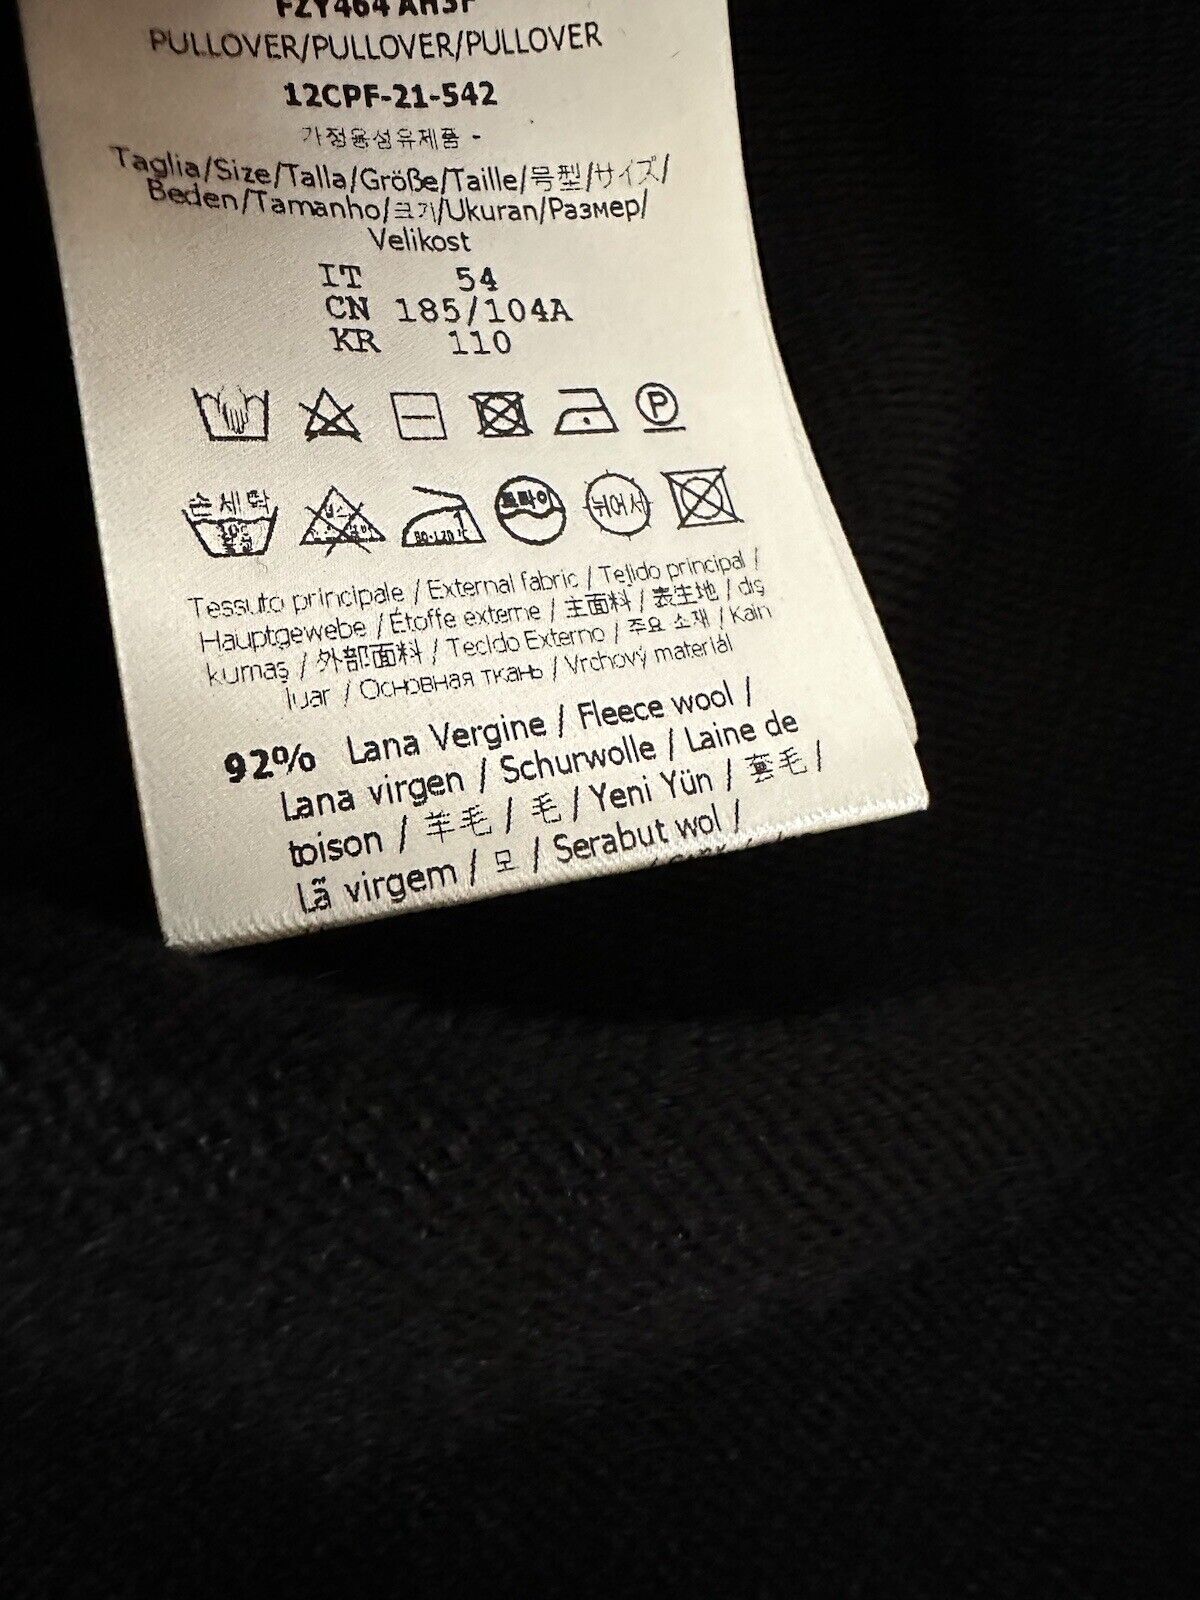 NWT 850 долларов США Шерстяной вязаный свитер Fendi Черный 58 евро FZY464 Сделано в Италии